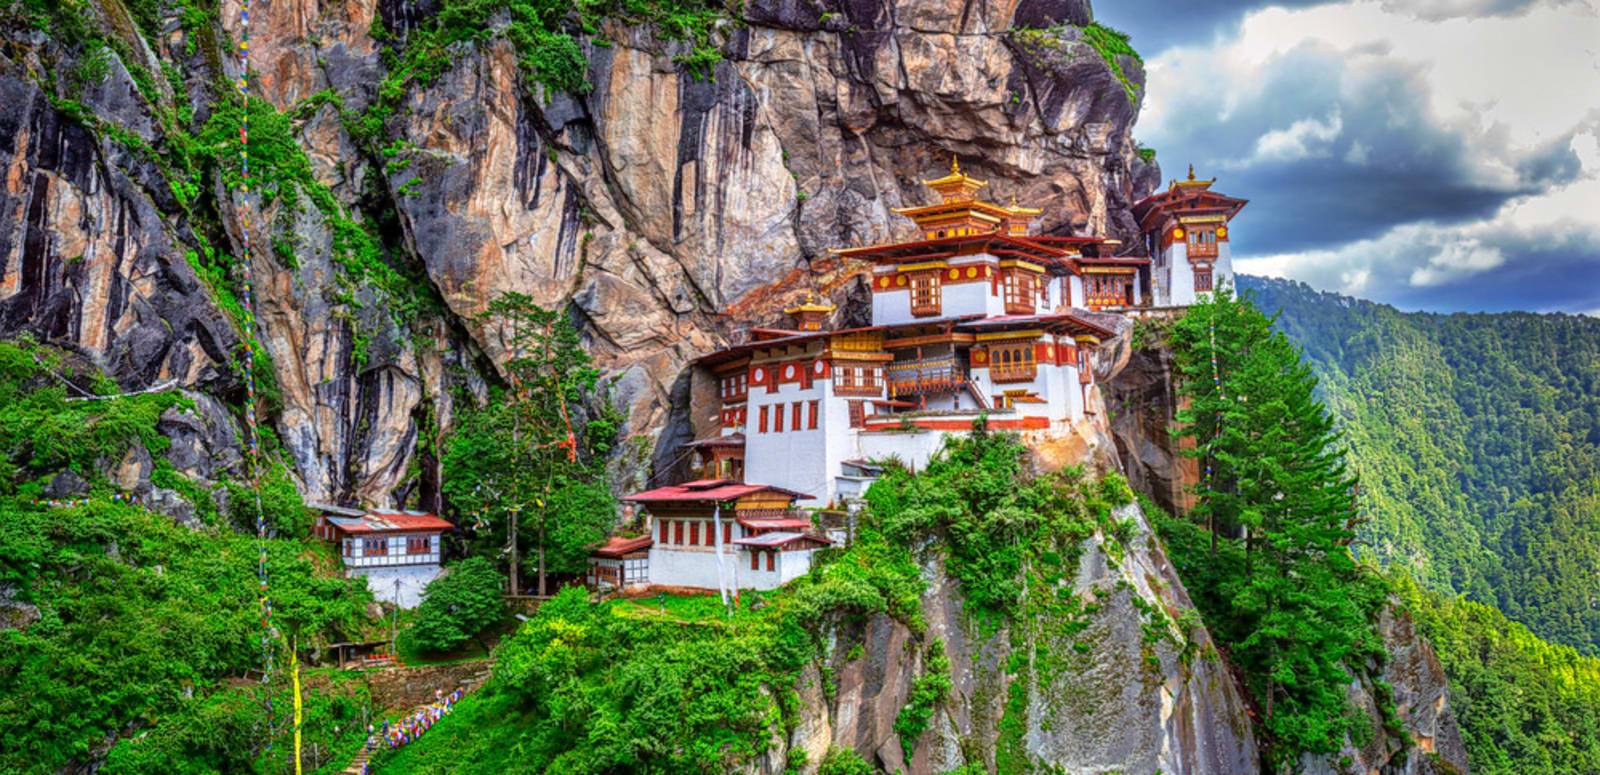 Bhutan Honeymoon Trip